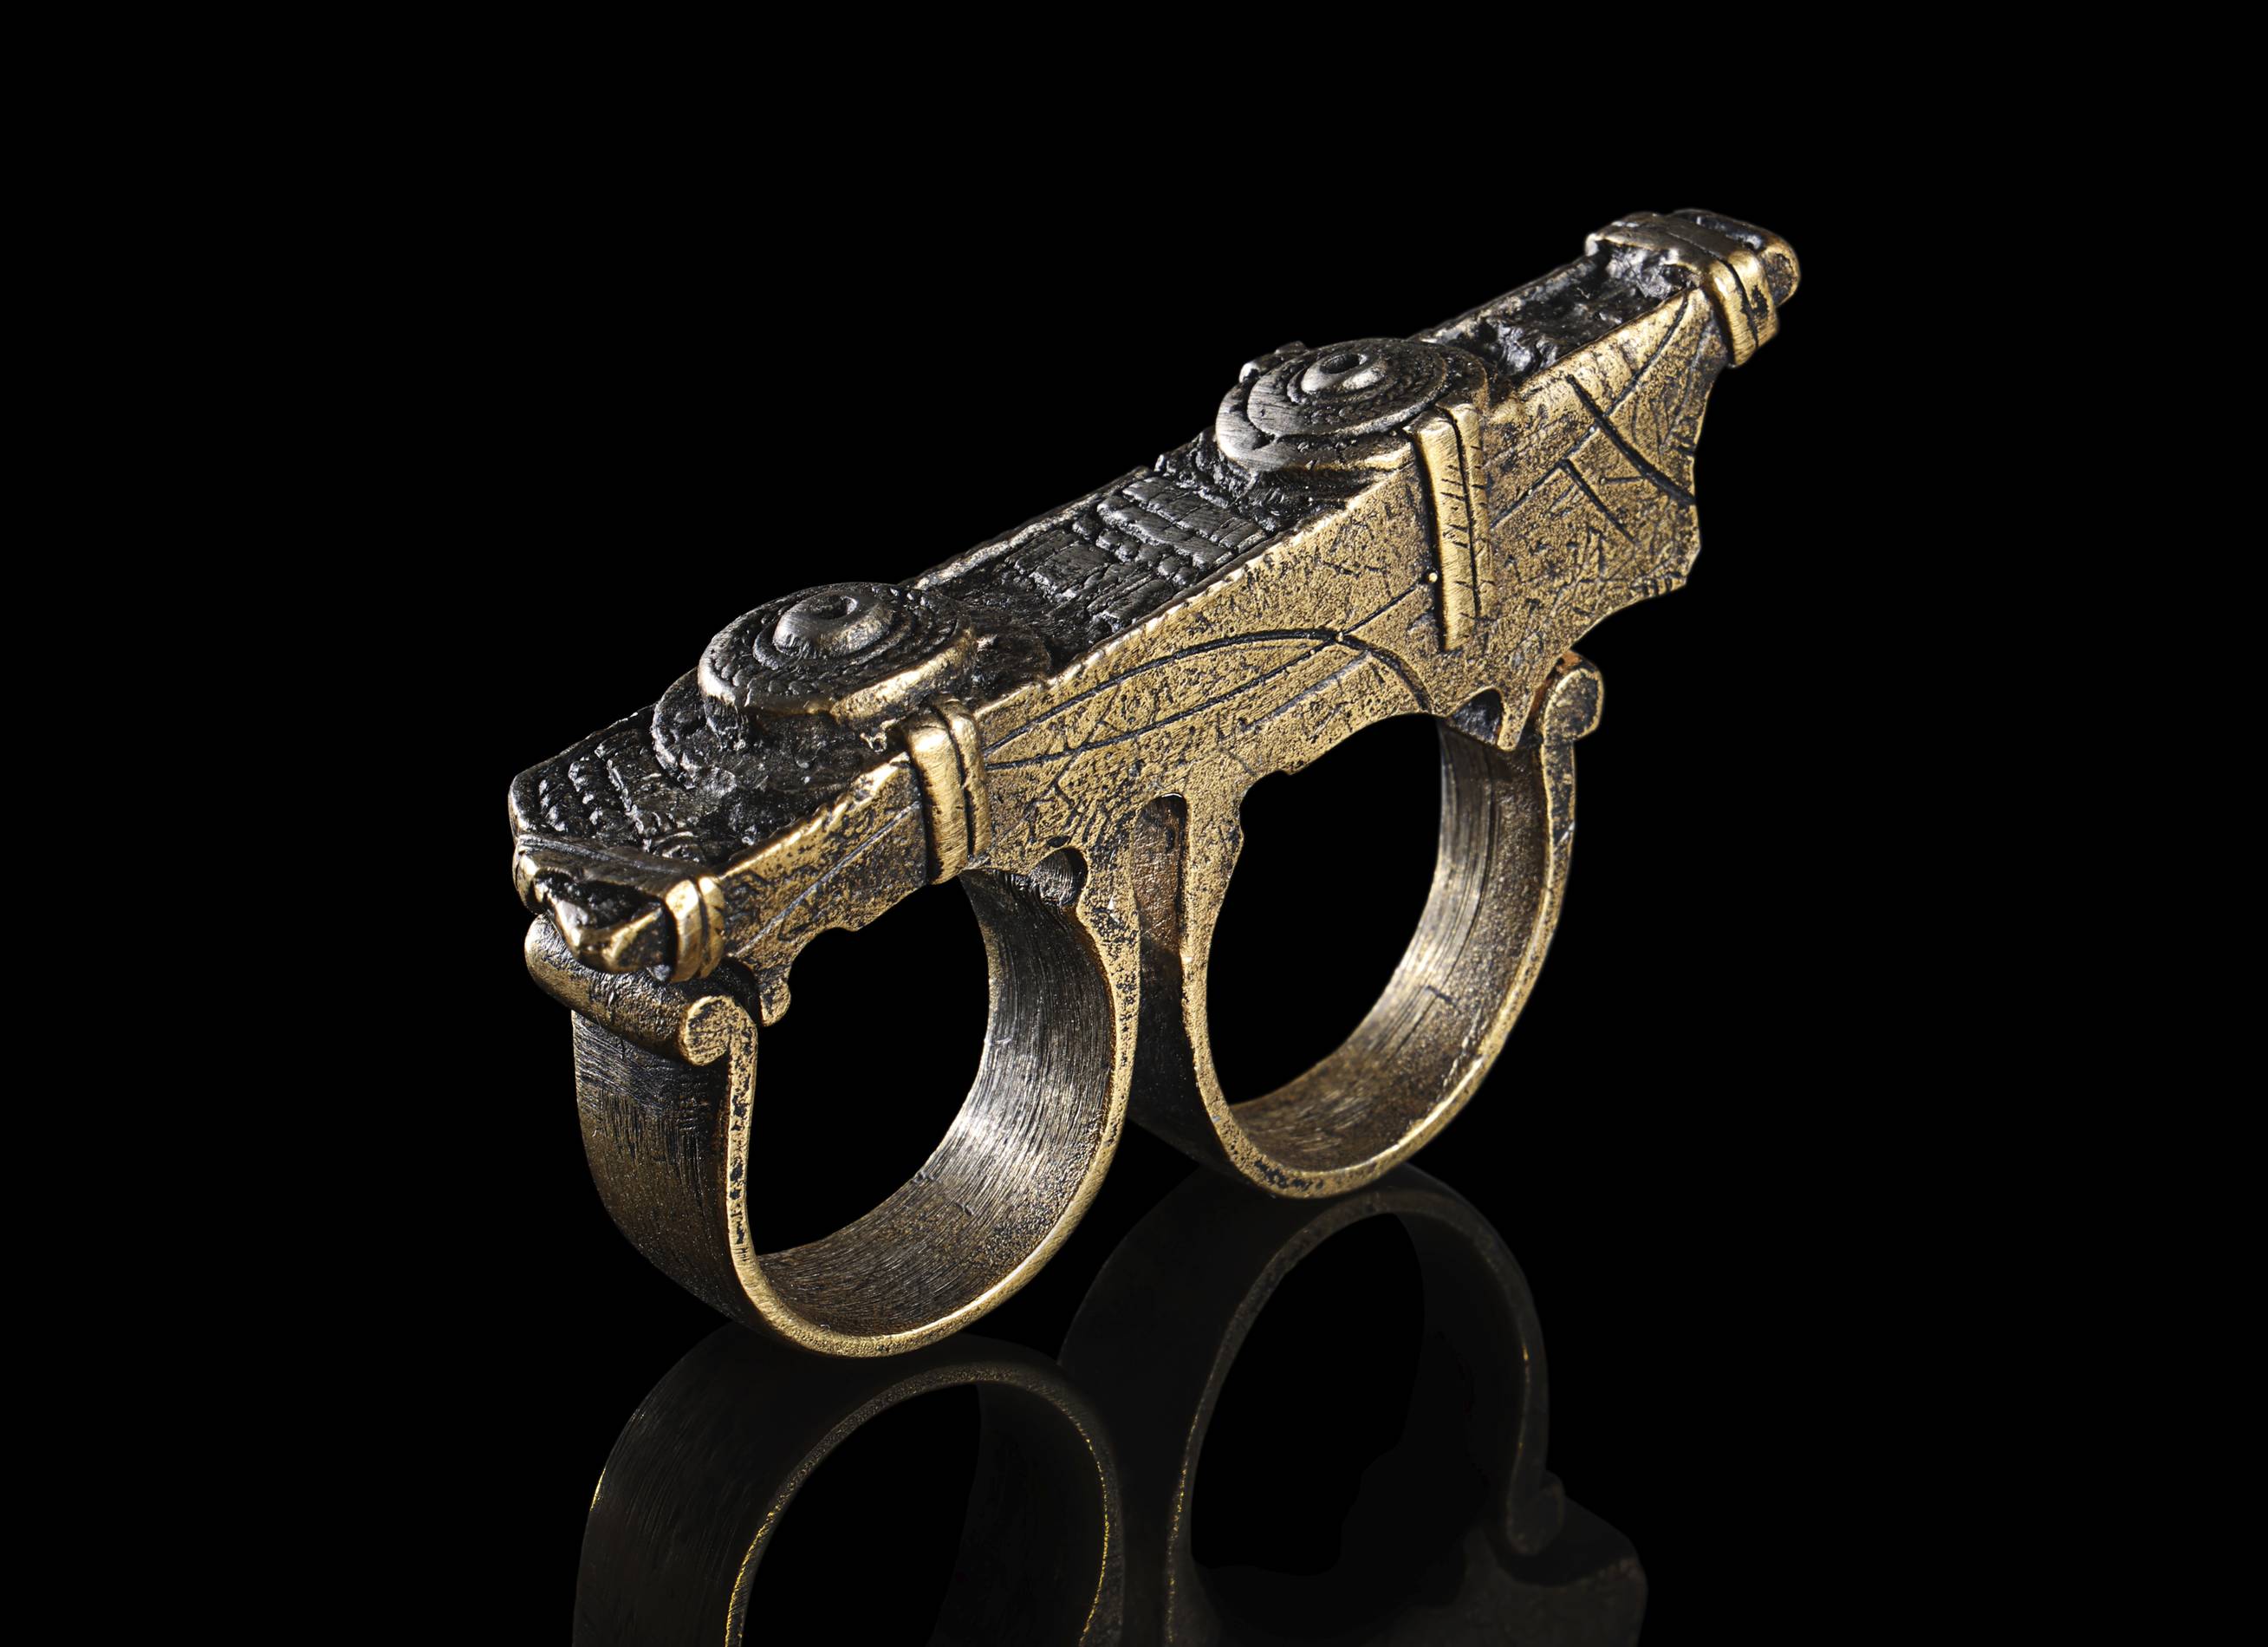 Doctor Strange's Sling Ring